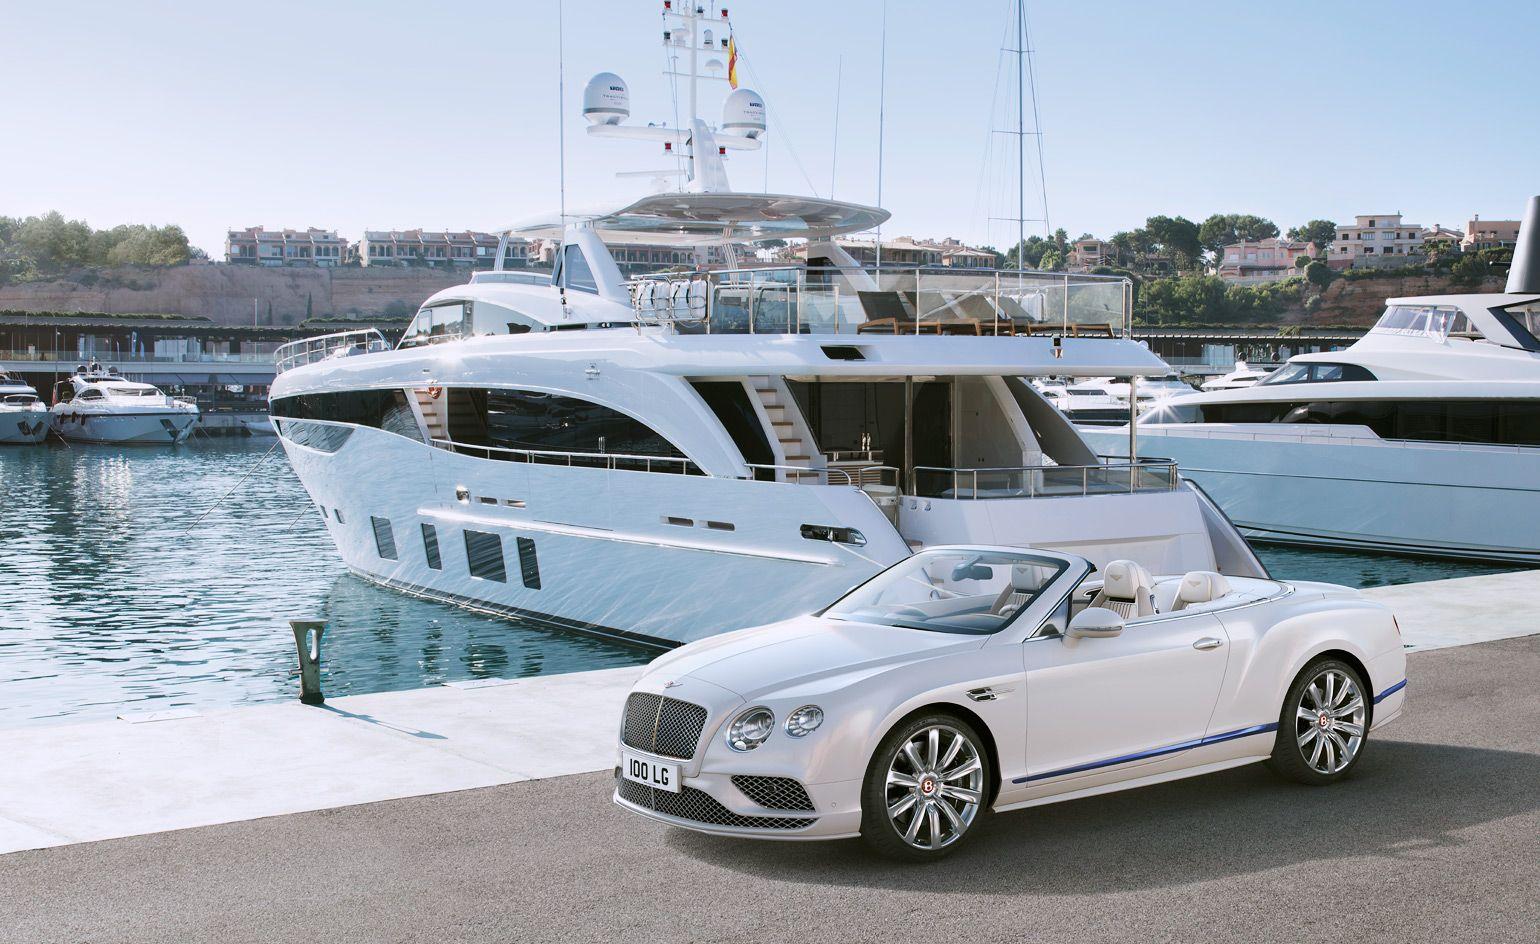 Princess Yachts and Bentley Motors navigate land and sea. Wallpaper*